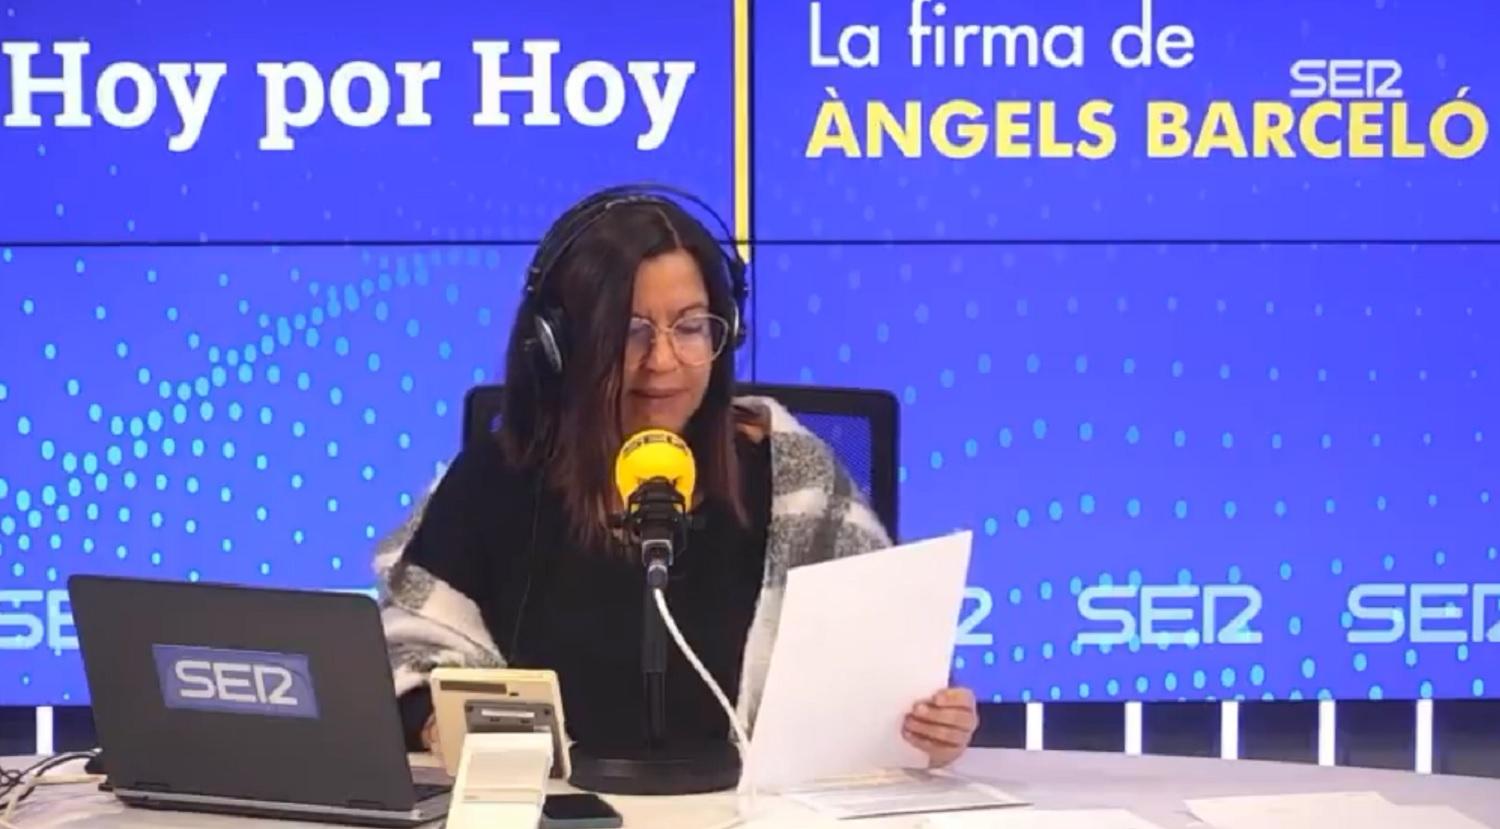 La presentadora de 'Hoy por hoy', Àngels Barceló. Fuente: Cadena Ser.